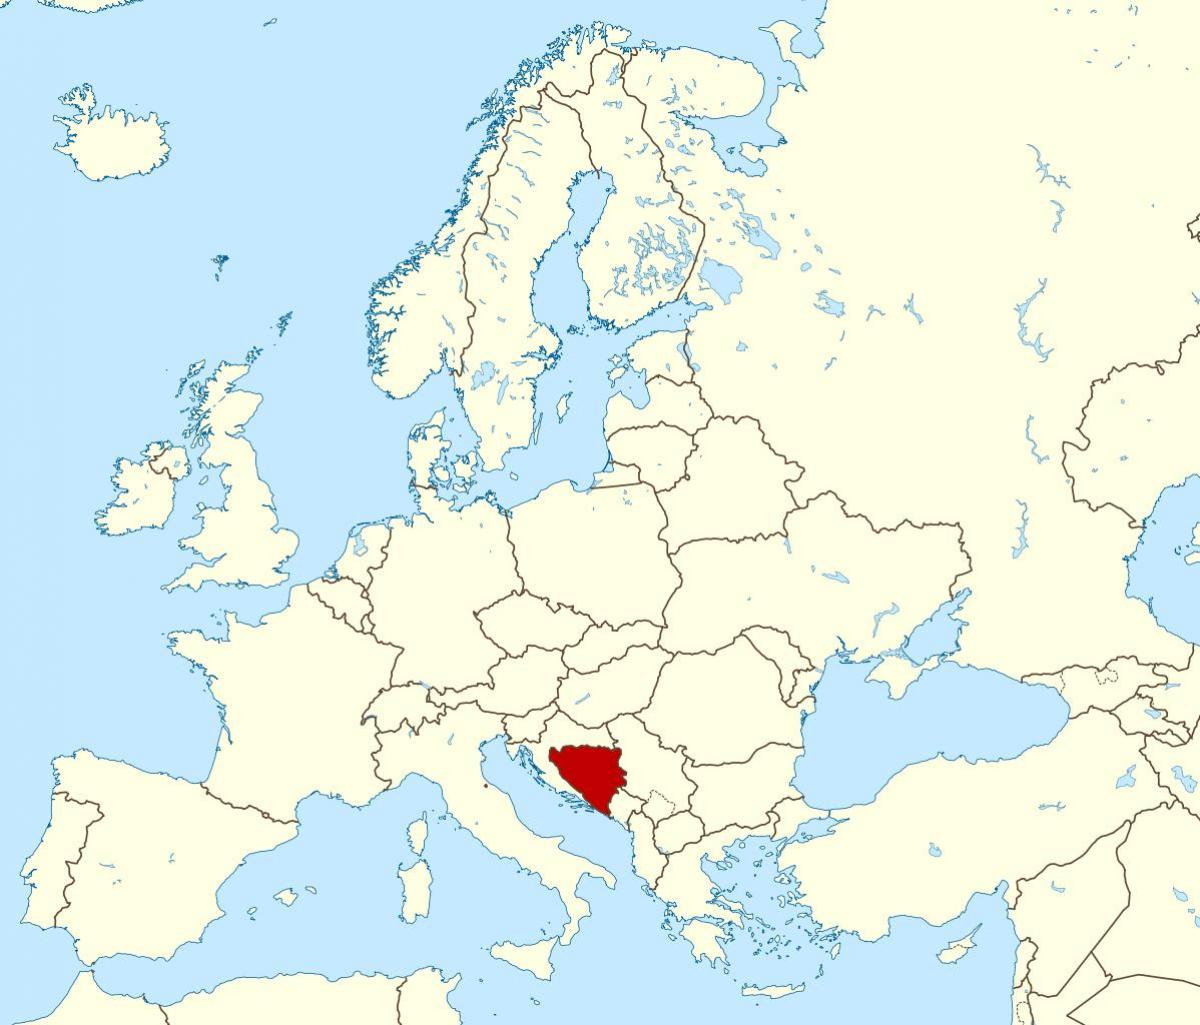 地图的波斯尼亚位于世界